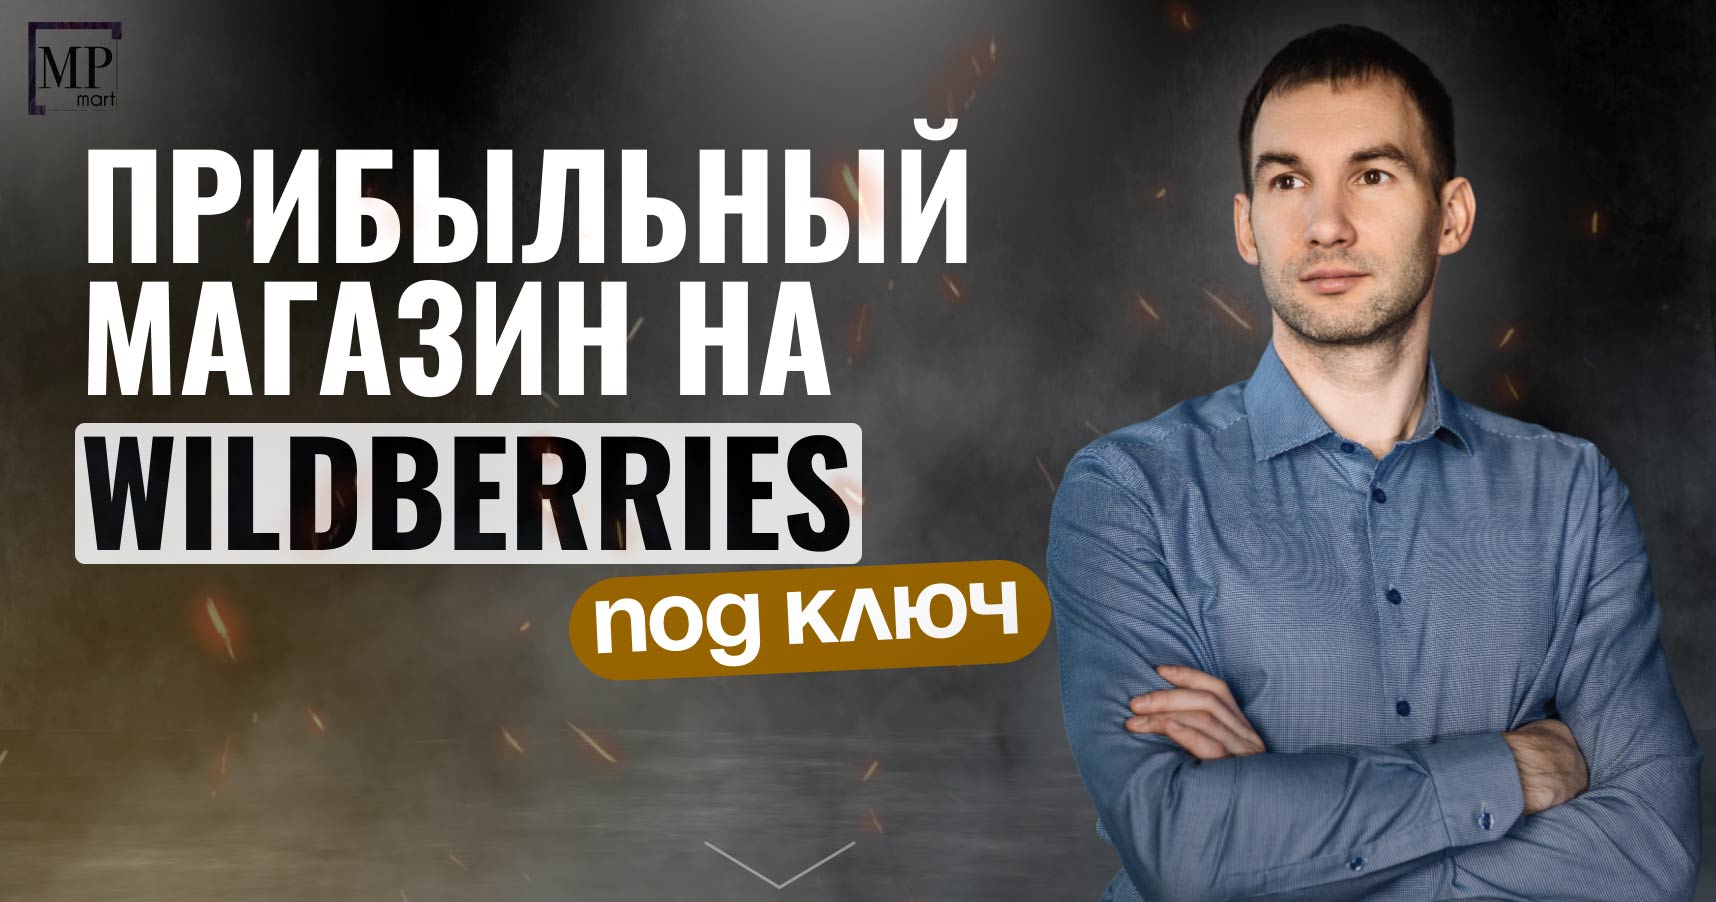 MPmart — франшиза бизнеса на Wildberries